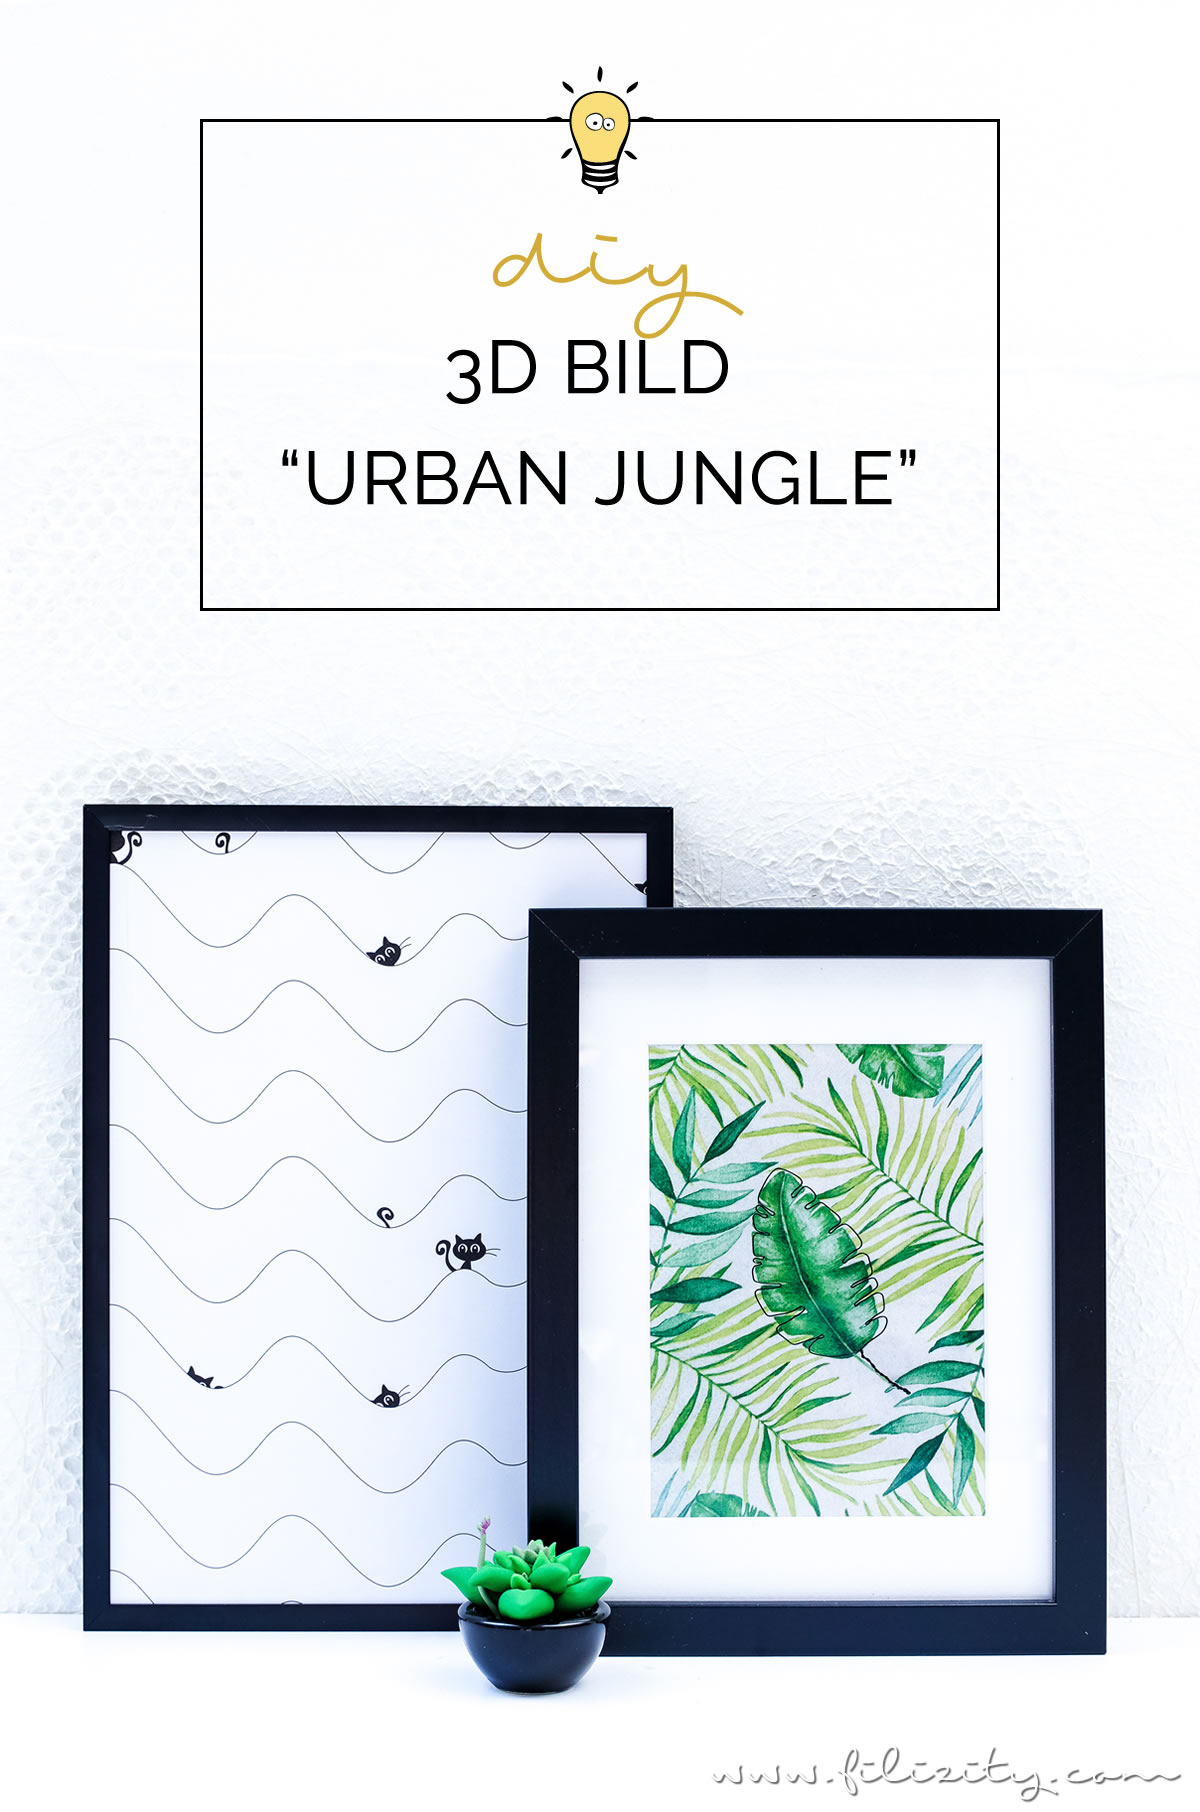 3D Bild "Urban Jungle" mit Draht-Skulptur selber machen | DIY Deko für die Wand | Filizity.com | Interior- & DIY-Blog aus dem Rheinland #urbanjungle #3d